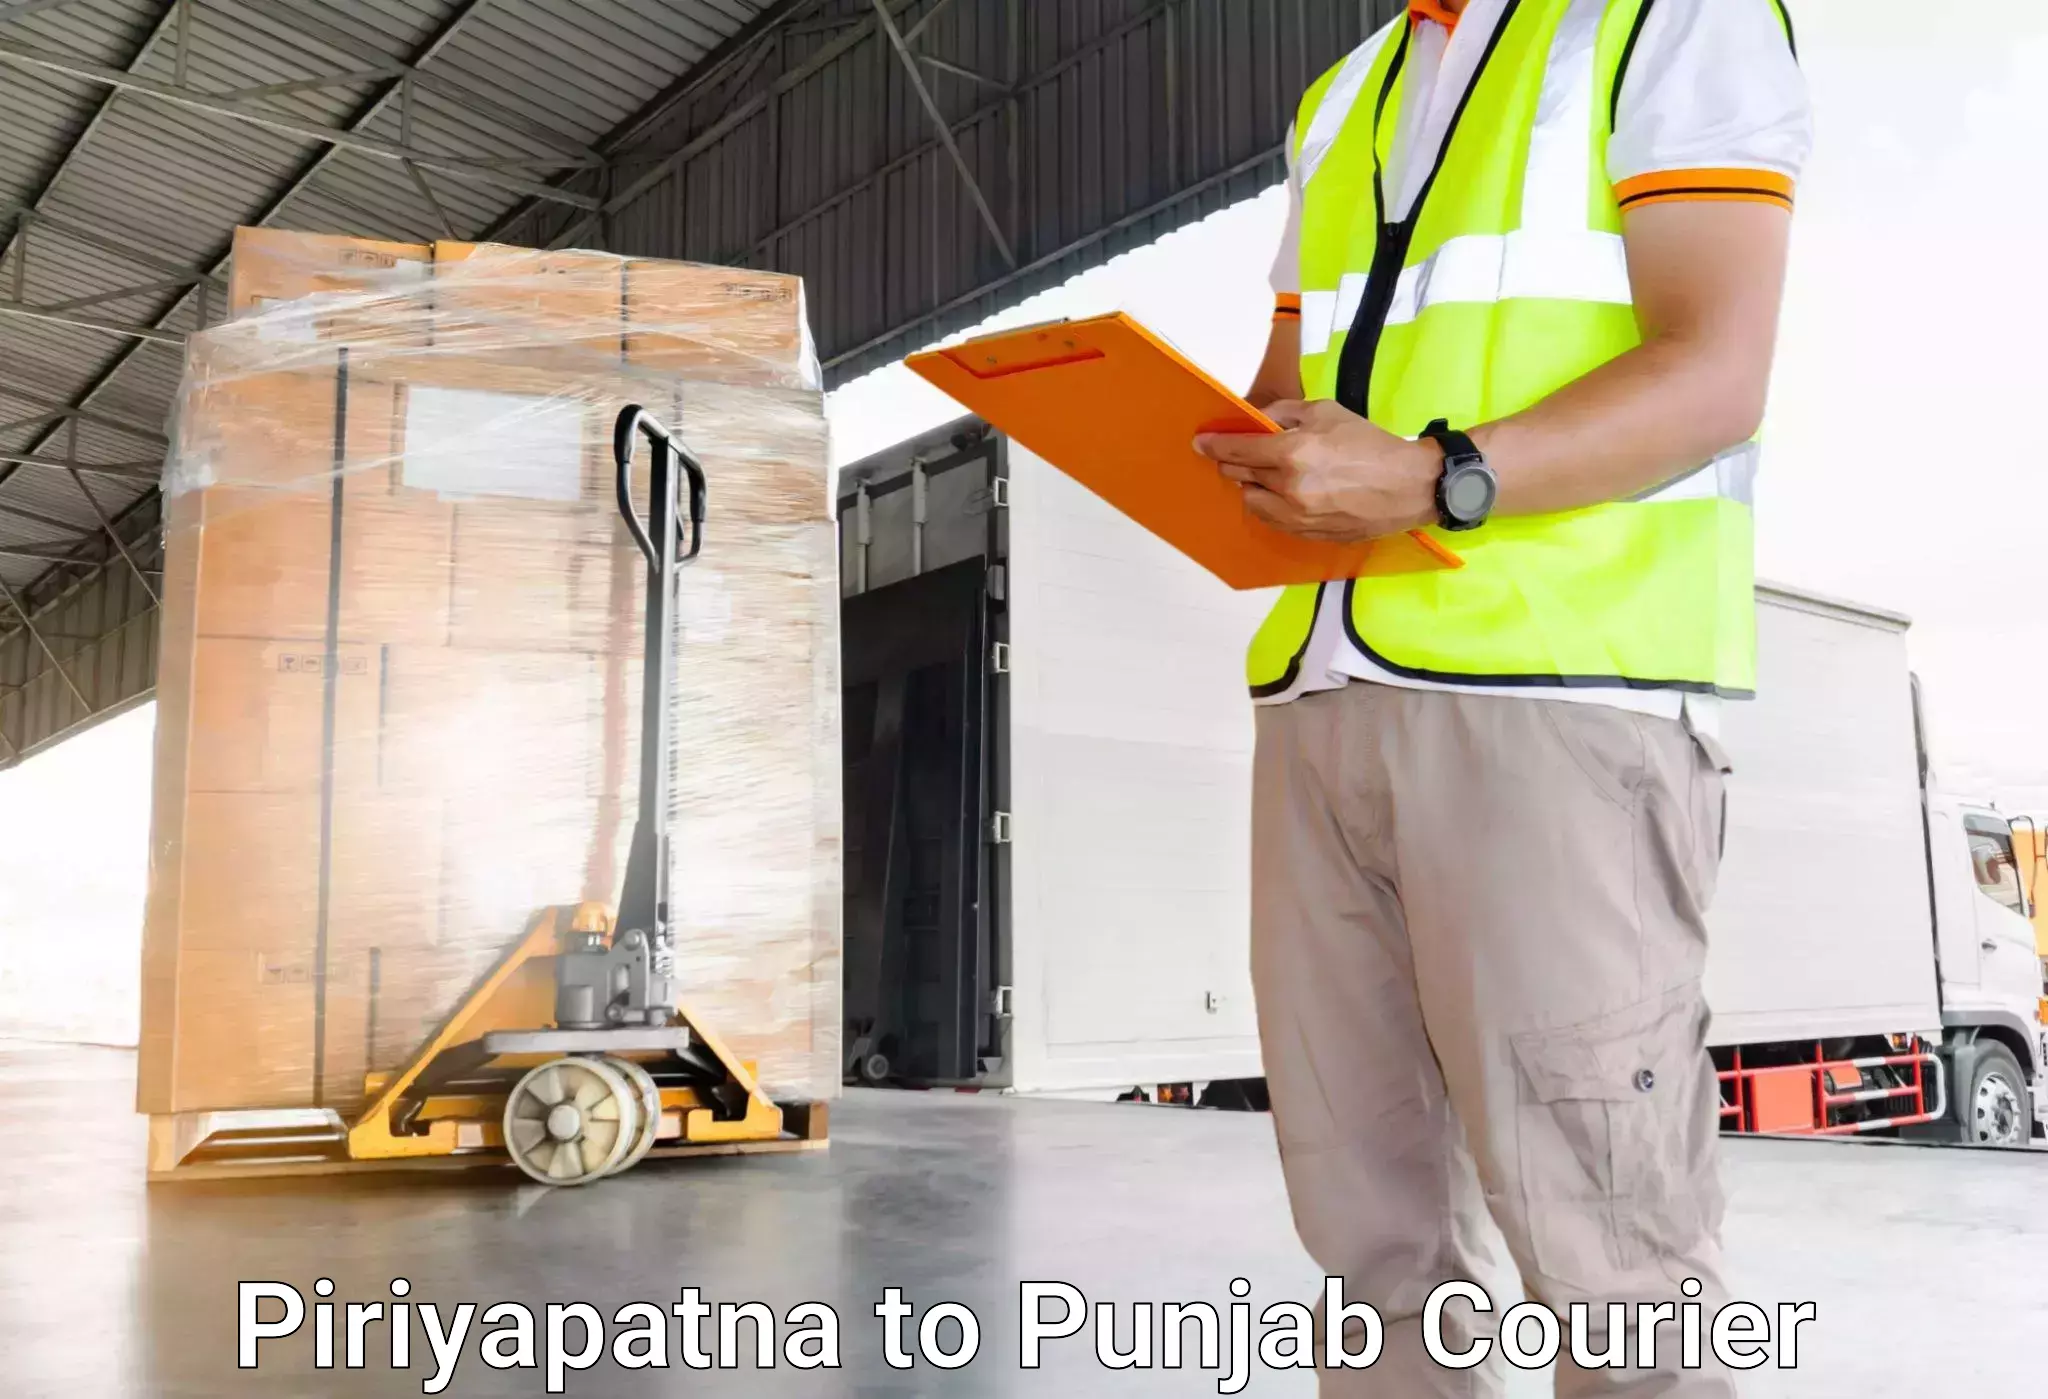 Musical instruments luggage transport Piriyapatna to Punjab